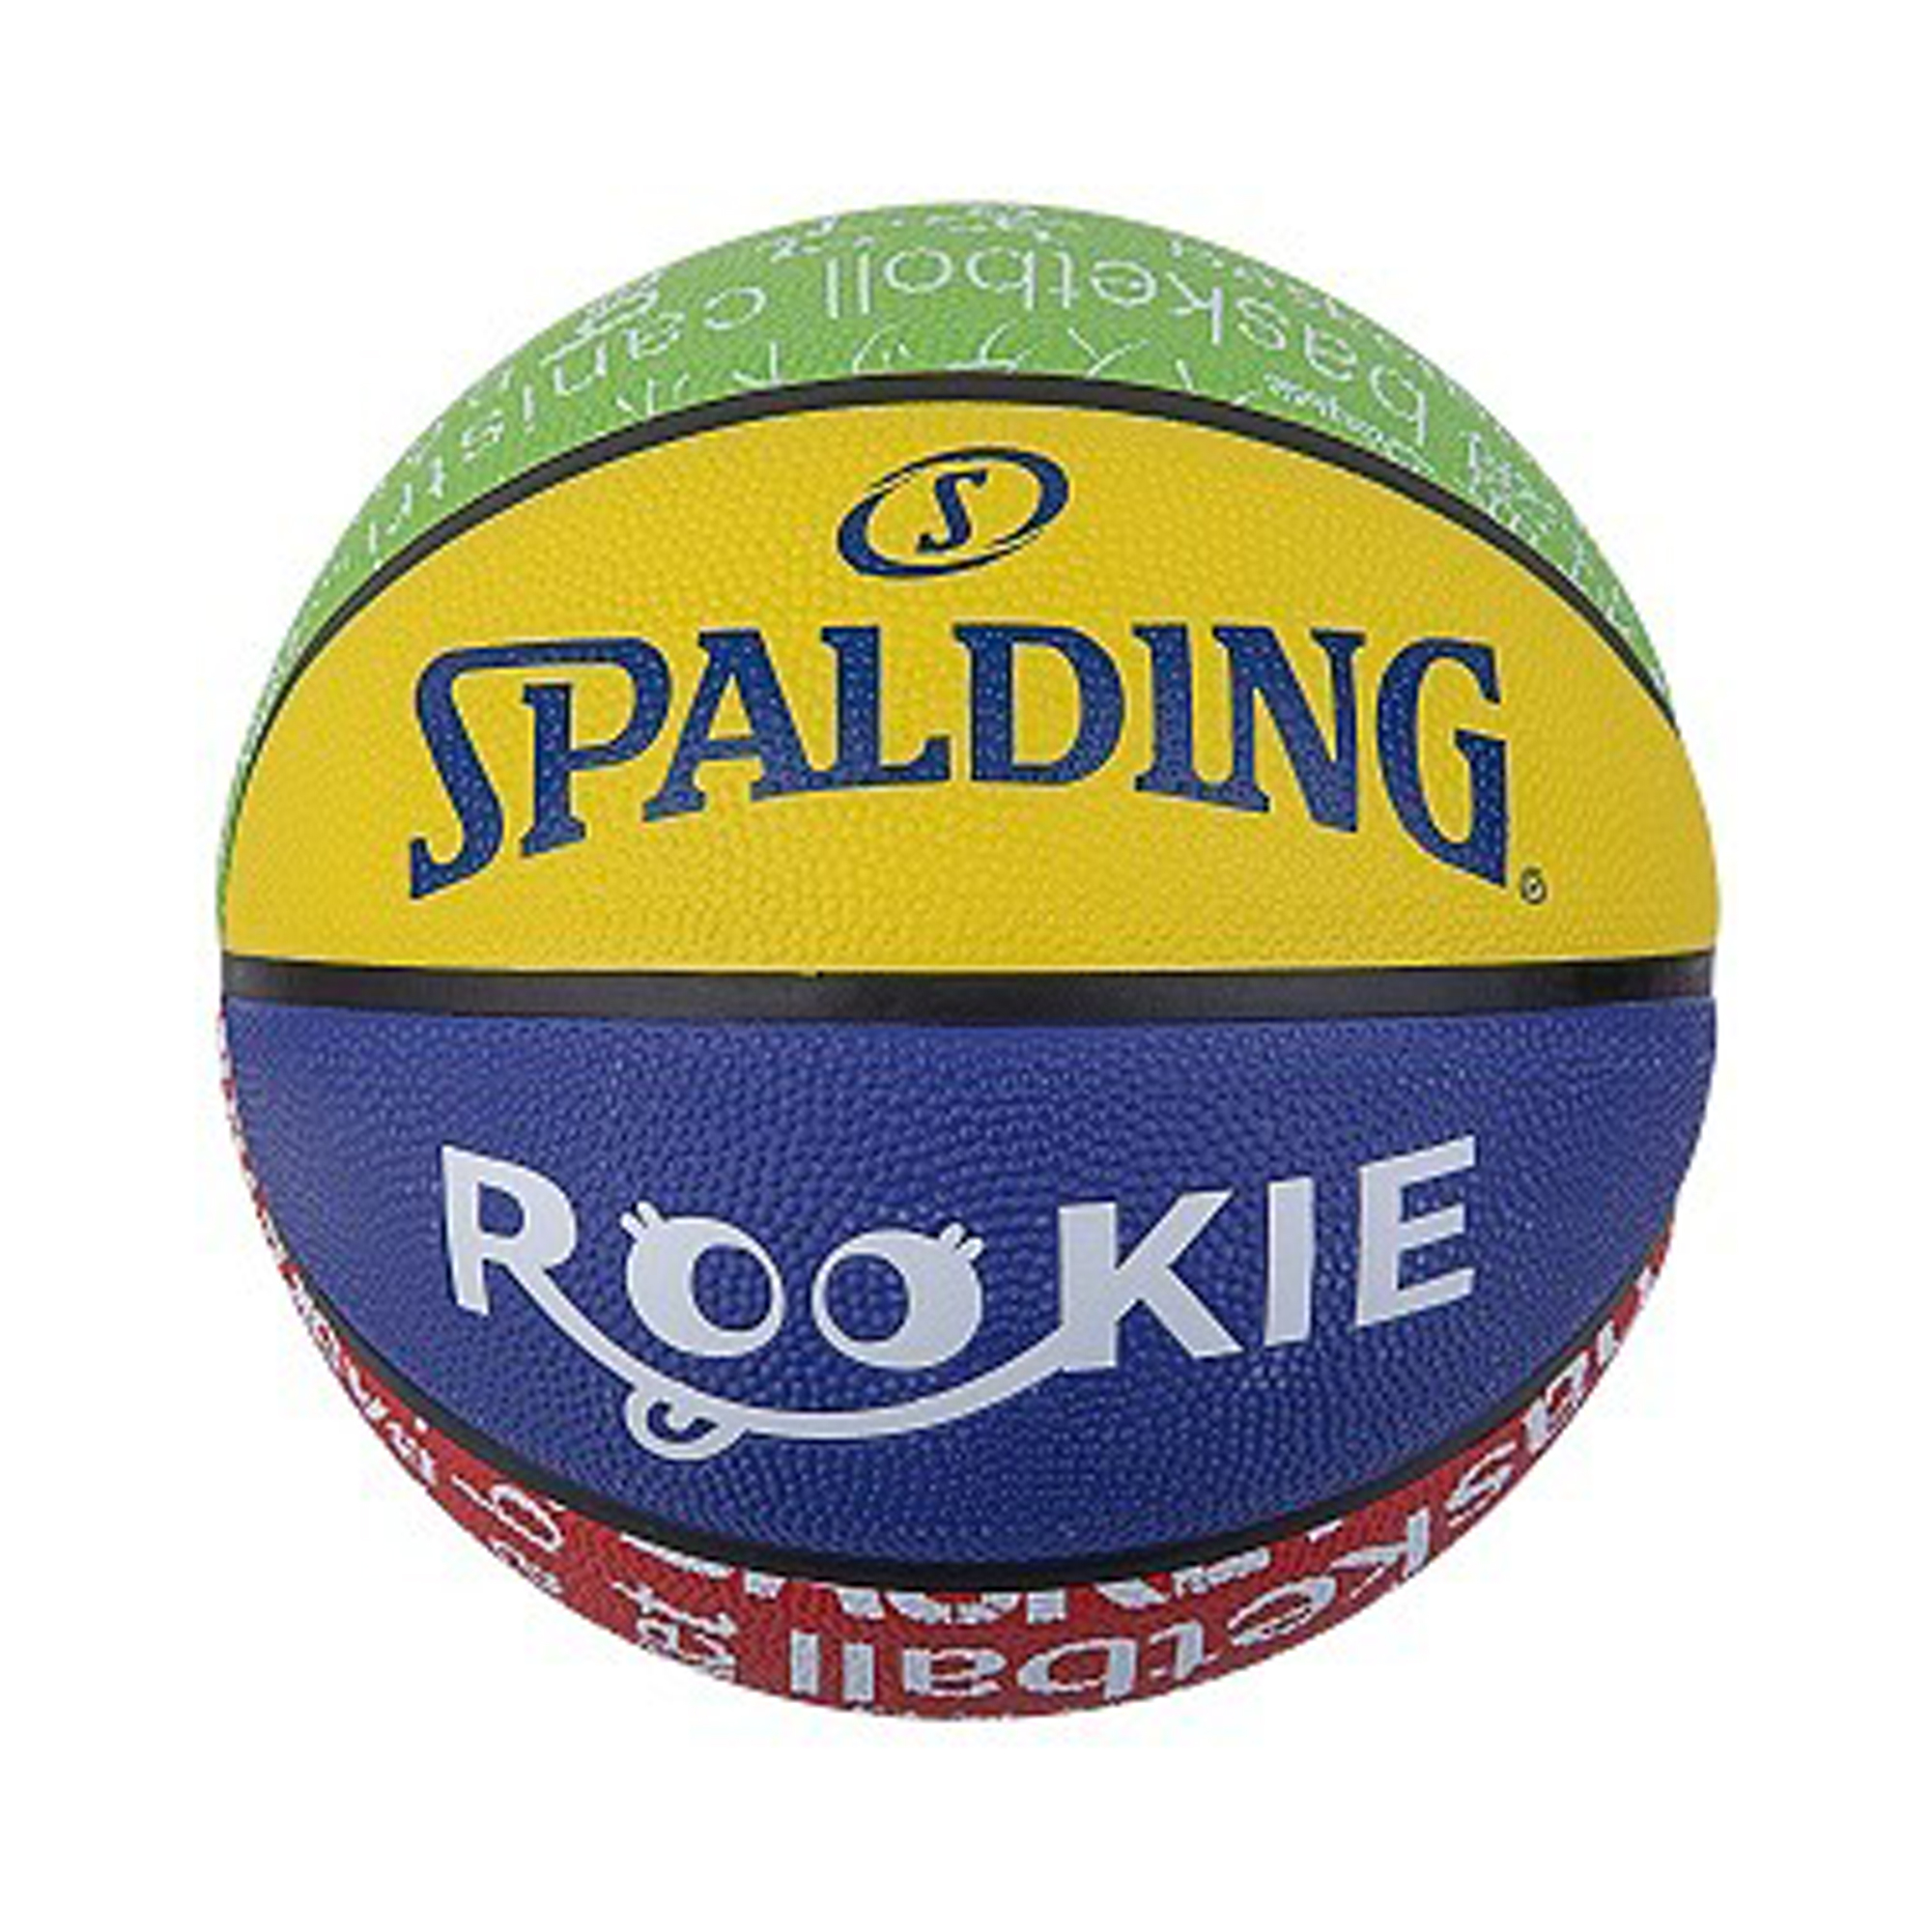 Ballon de Basketball Spalding Rookie